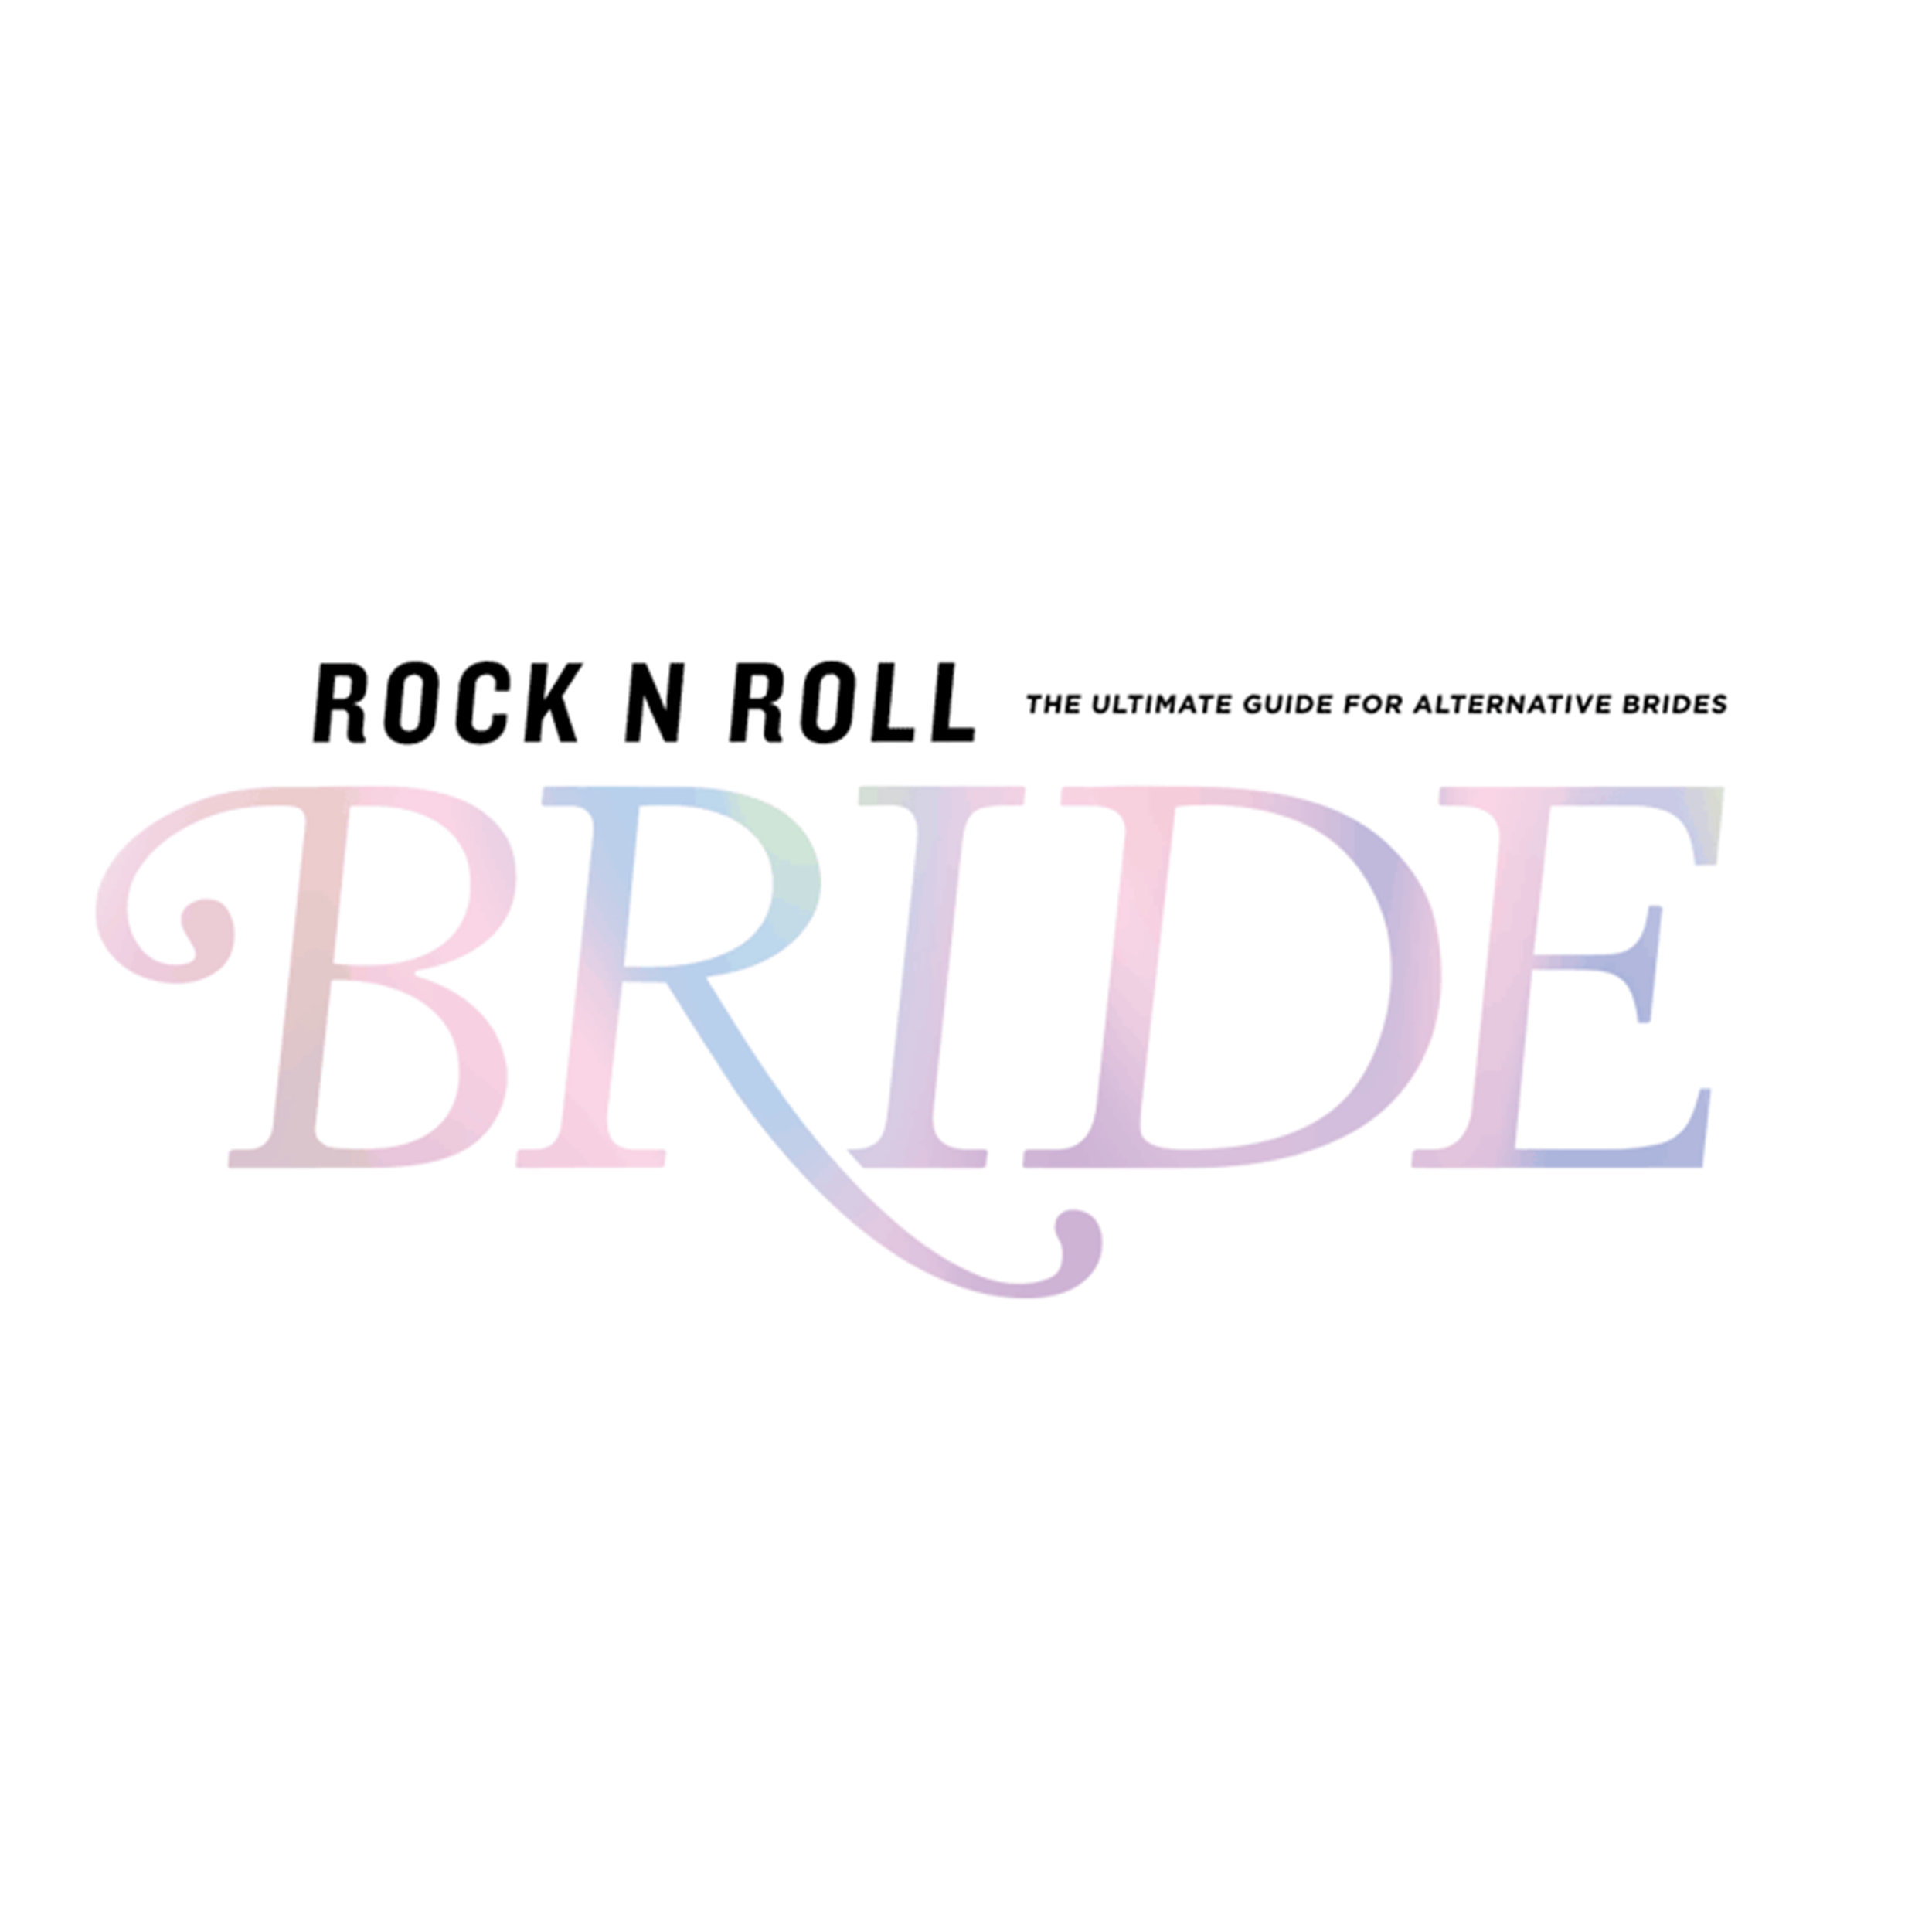 CARPETA-33 - Rock n Roll bride.jpg